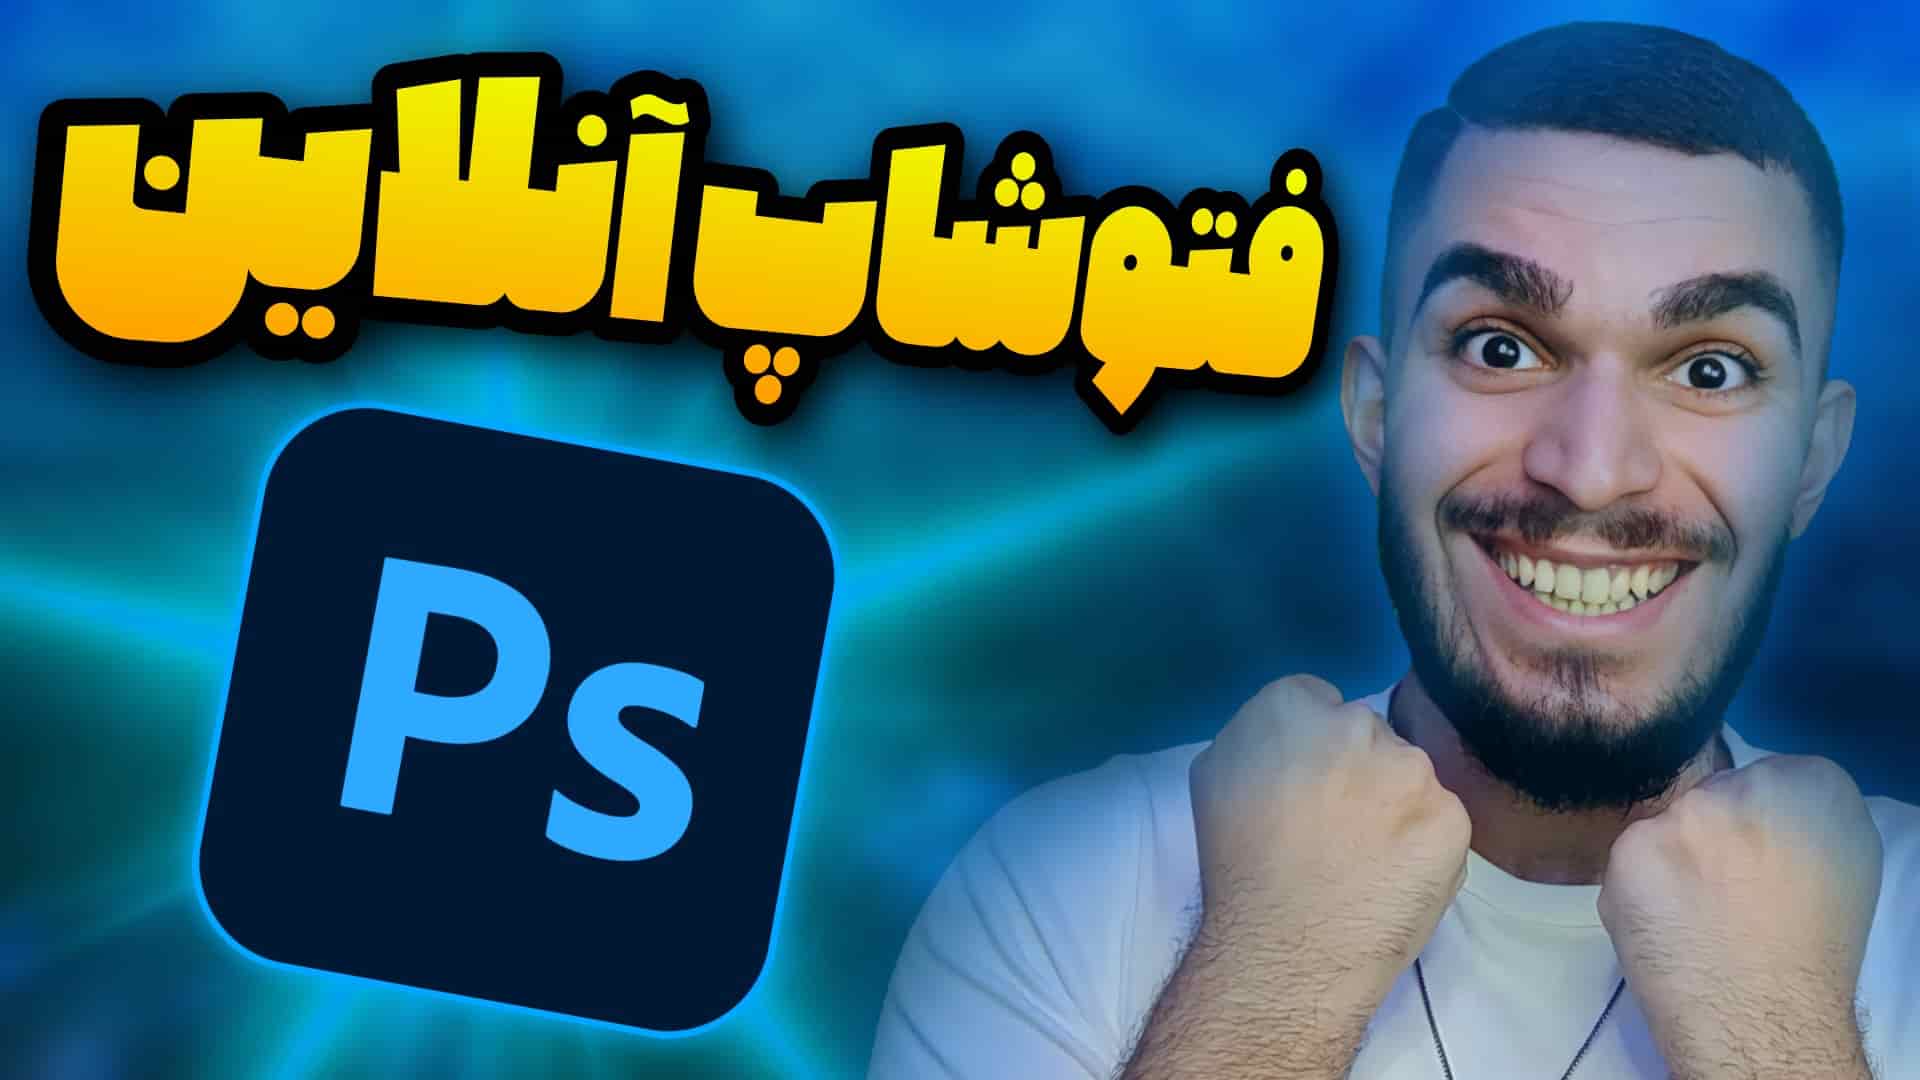 فتوشاپ آنلاین رایگان ! بهترین فتوشاپ آنلاین تحت وب ! فتوشاپ بدون نیاز به نصب سید علی ابراهیمی 